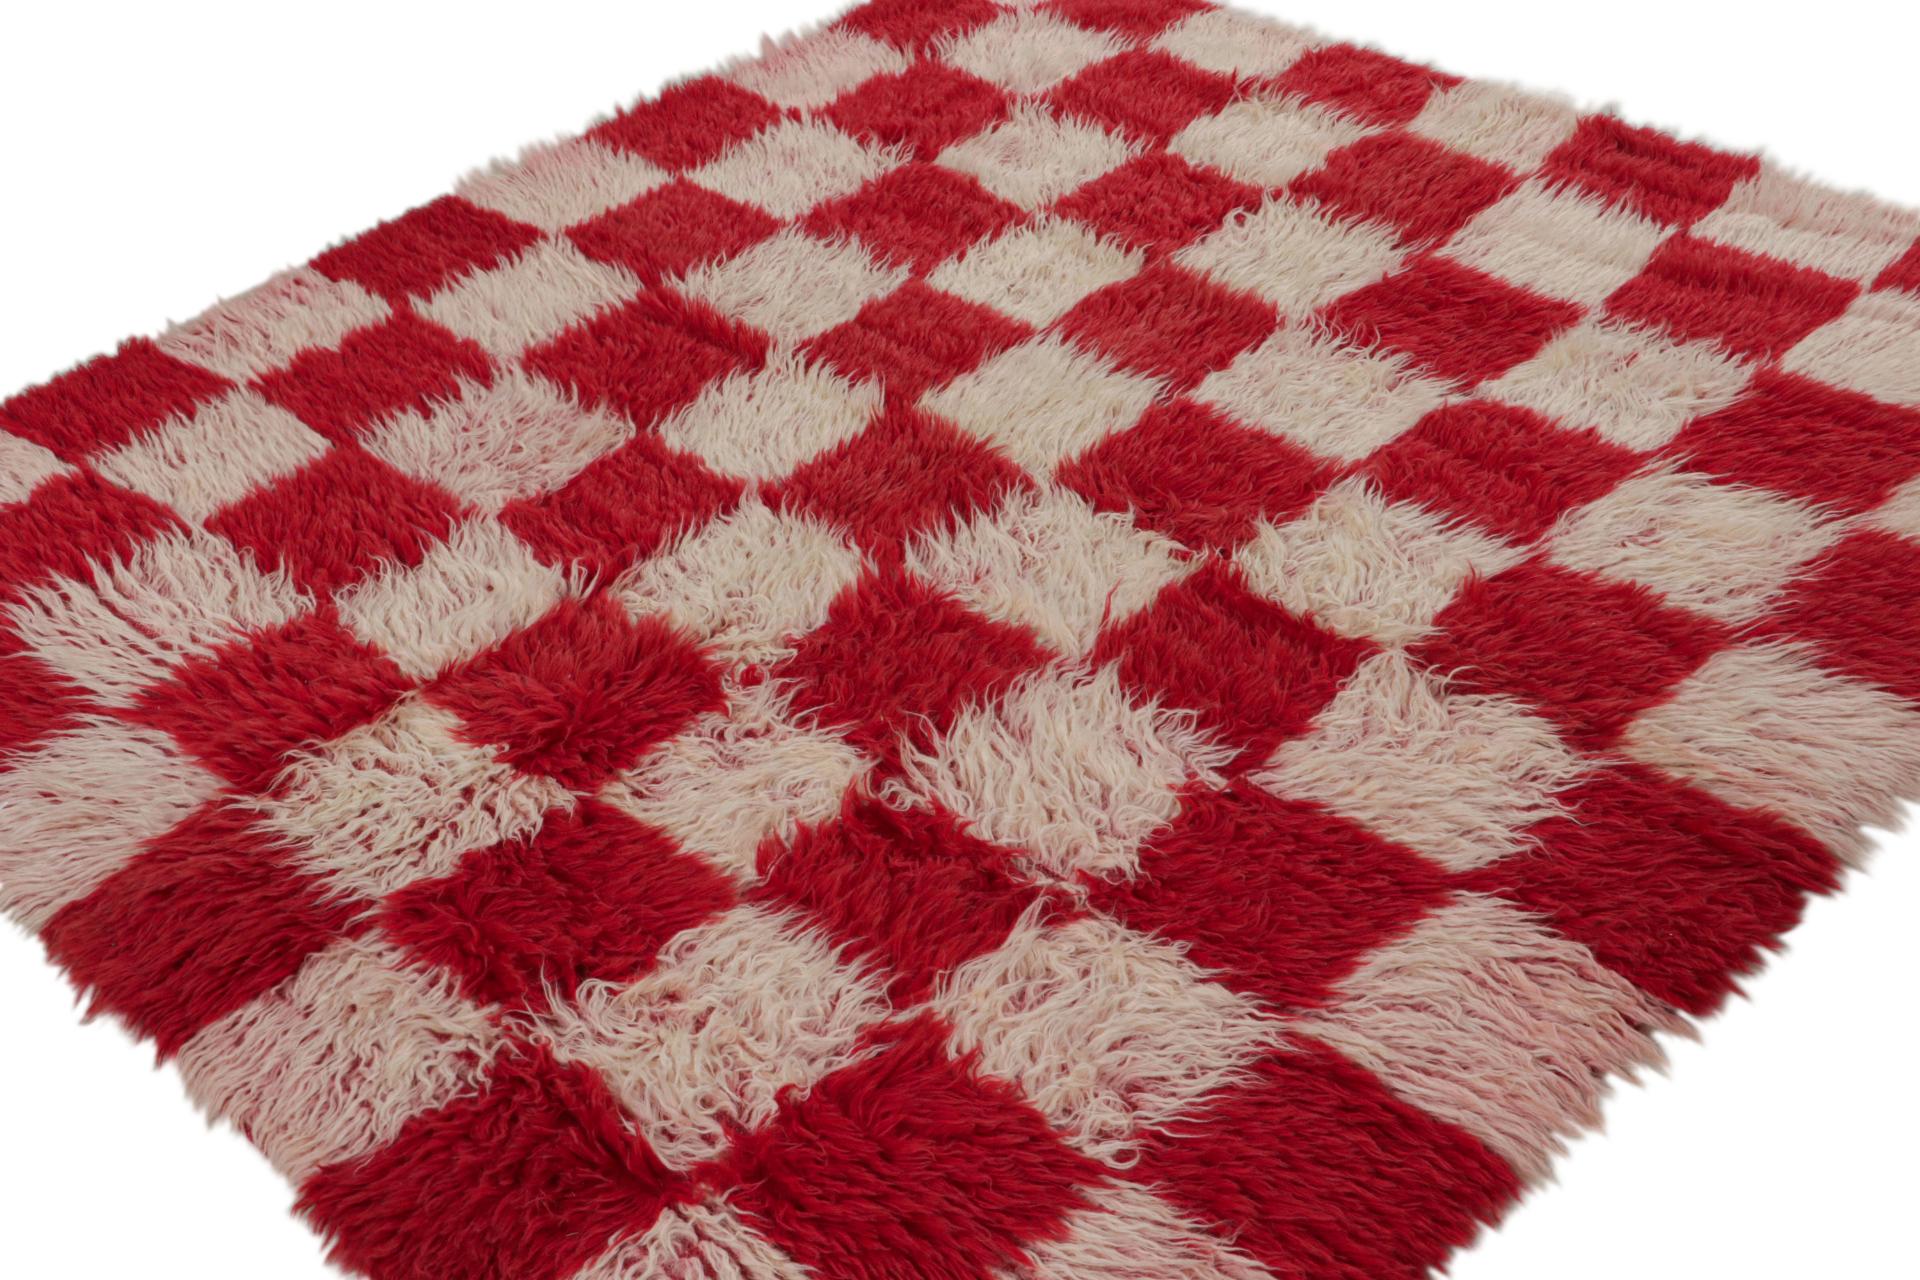 Dieser 7x7 große, handgeknüpfte Tulu-Teppich aus Wolle (ca. 1950-1960) gehört zur Familie der Tulu-Teppiche mit minimalistischen, geometrischen Karomustern, wie sie in den roten und rosa Quadraten zu sehen sind.  

Über das Design: 

Tulus gehören